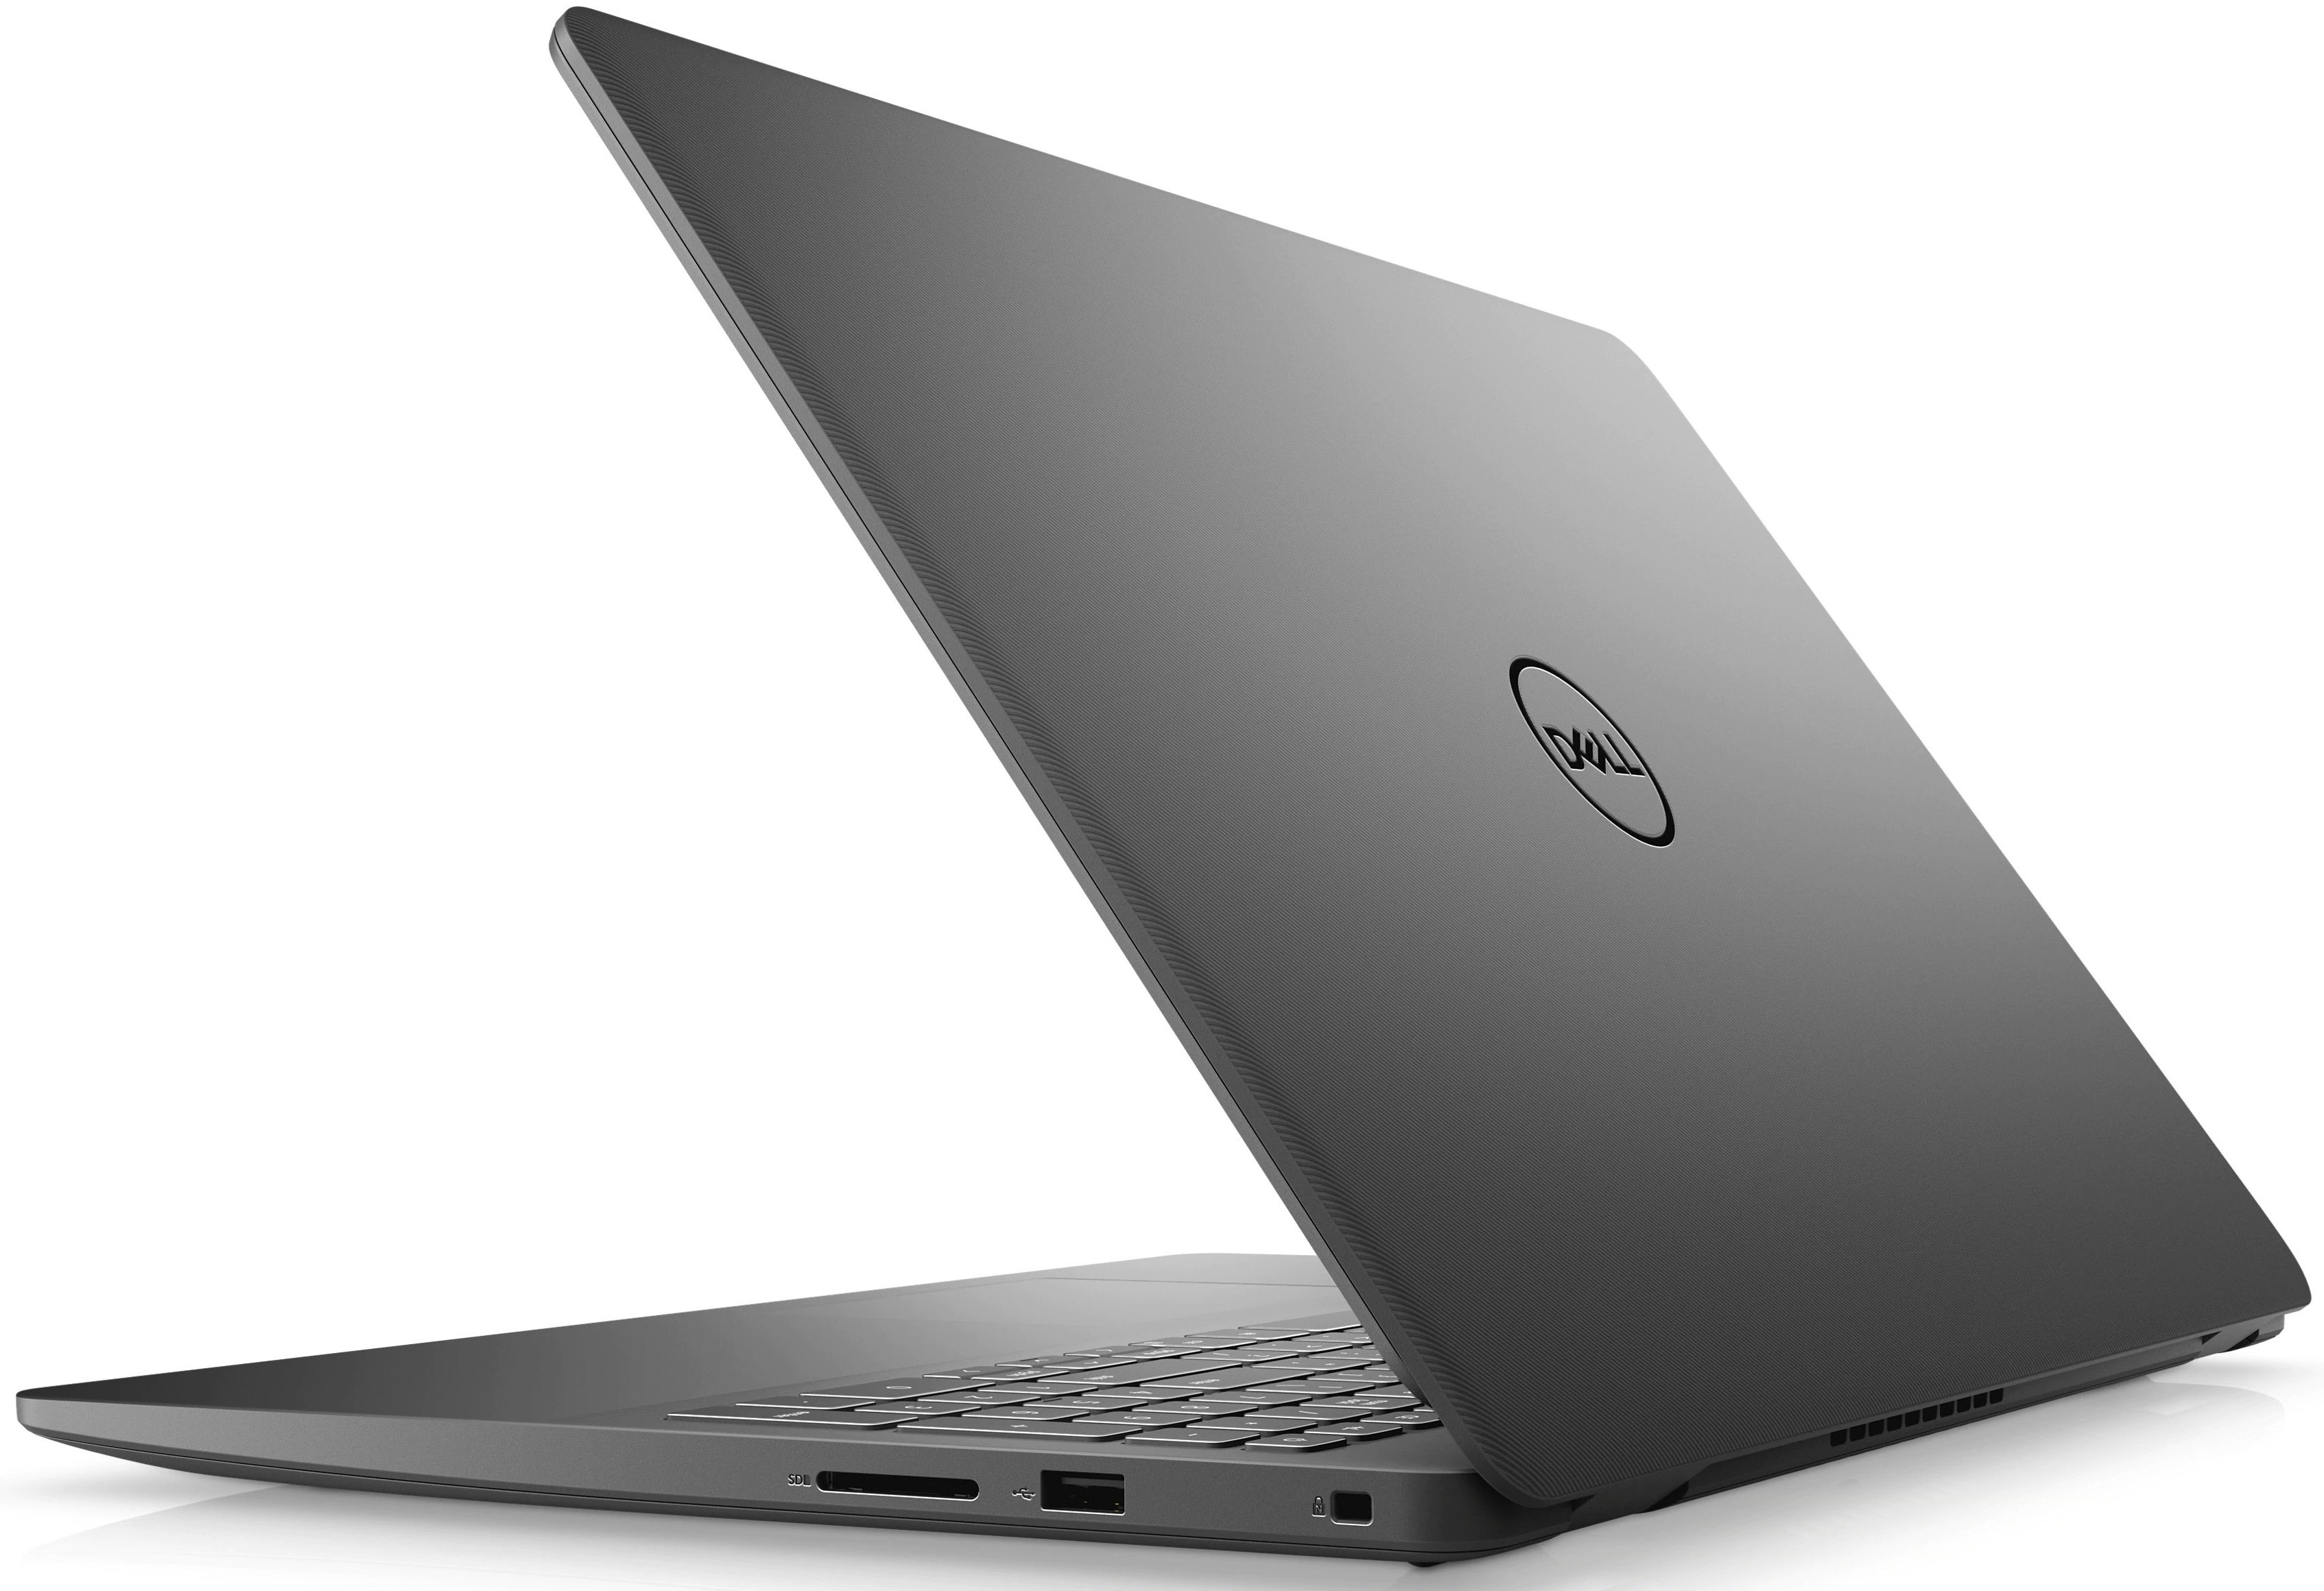 Ноутбук Dell Vostro 3500 Core i5-1135G7 (2.4GHz)15,6'' FullHD WVA Antiglare8GB (1x8GB) DDR4 256GB SSD NV GF MX330 (2GB) 3cell (42 WHr),FPR,TPM Linux 1y NBD black-39243